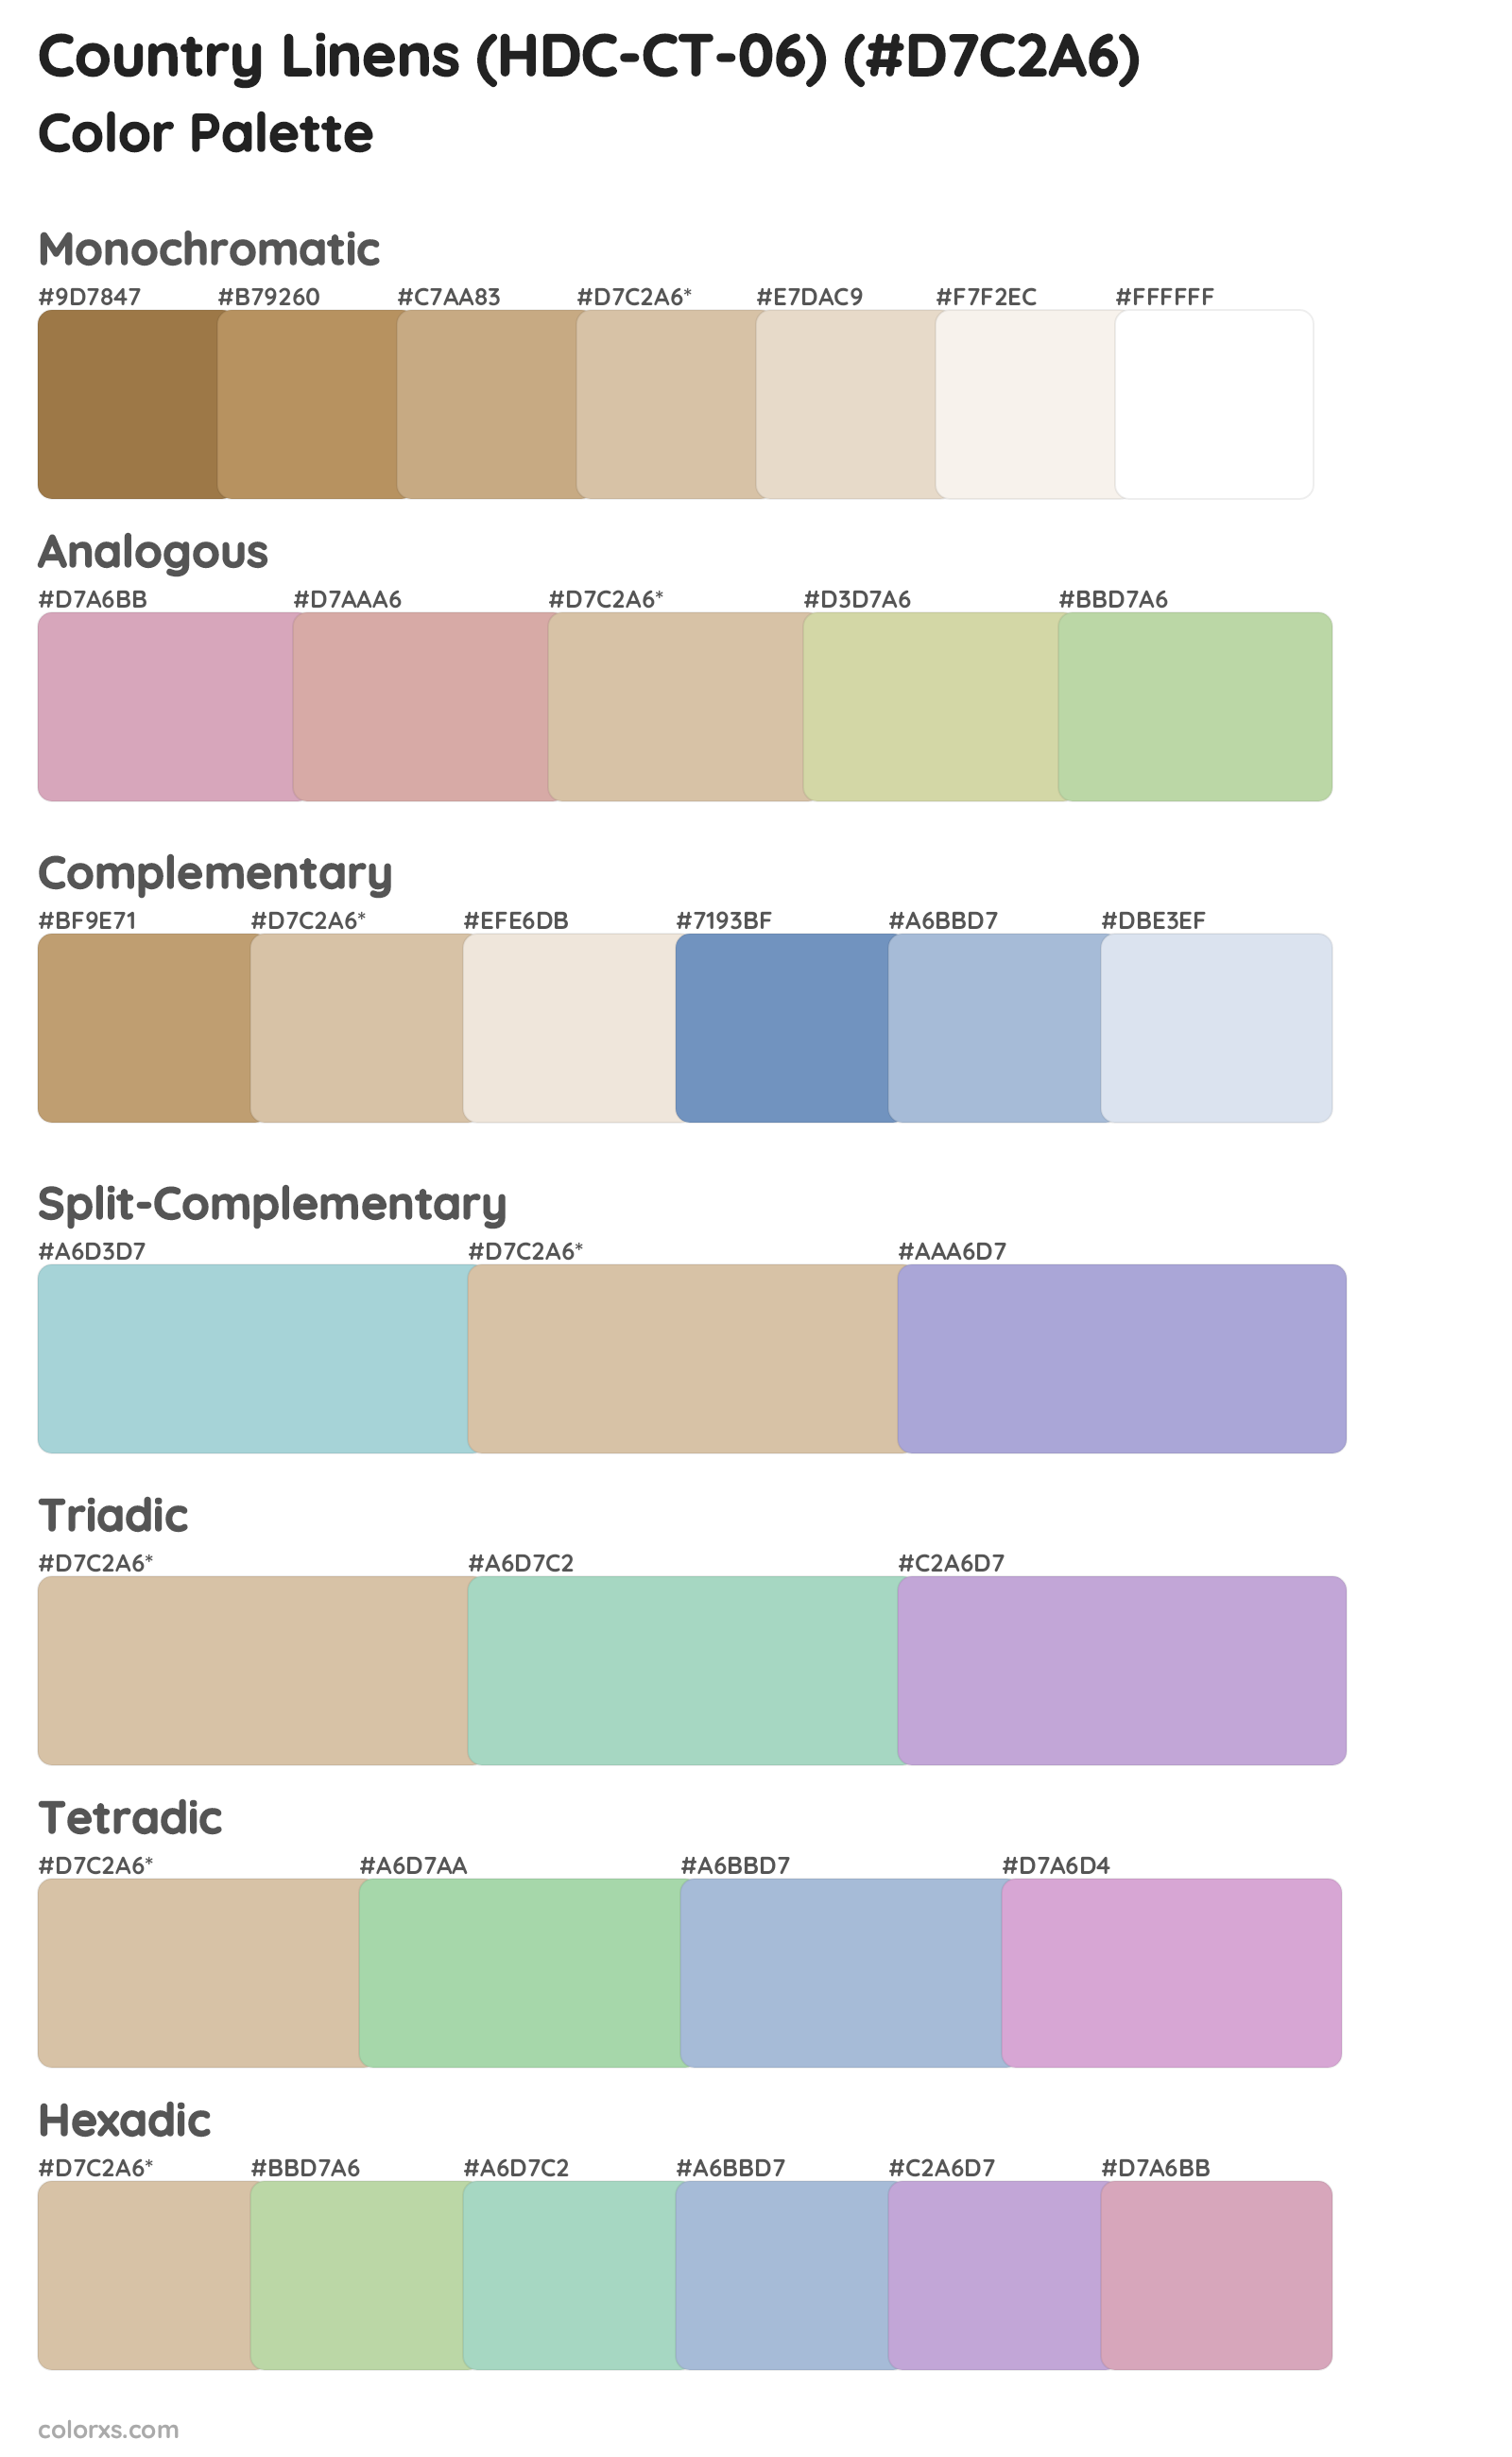 Country Linens (HDC-CT-06) Color Scheme Palettes